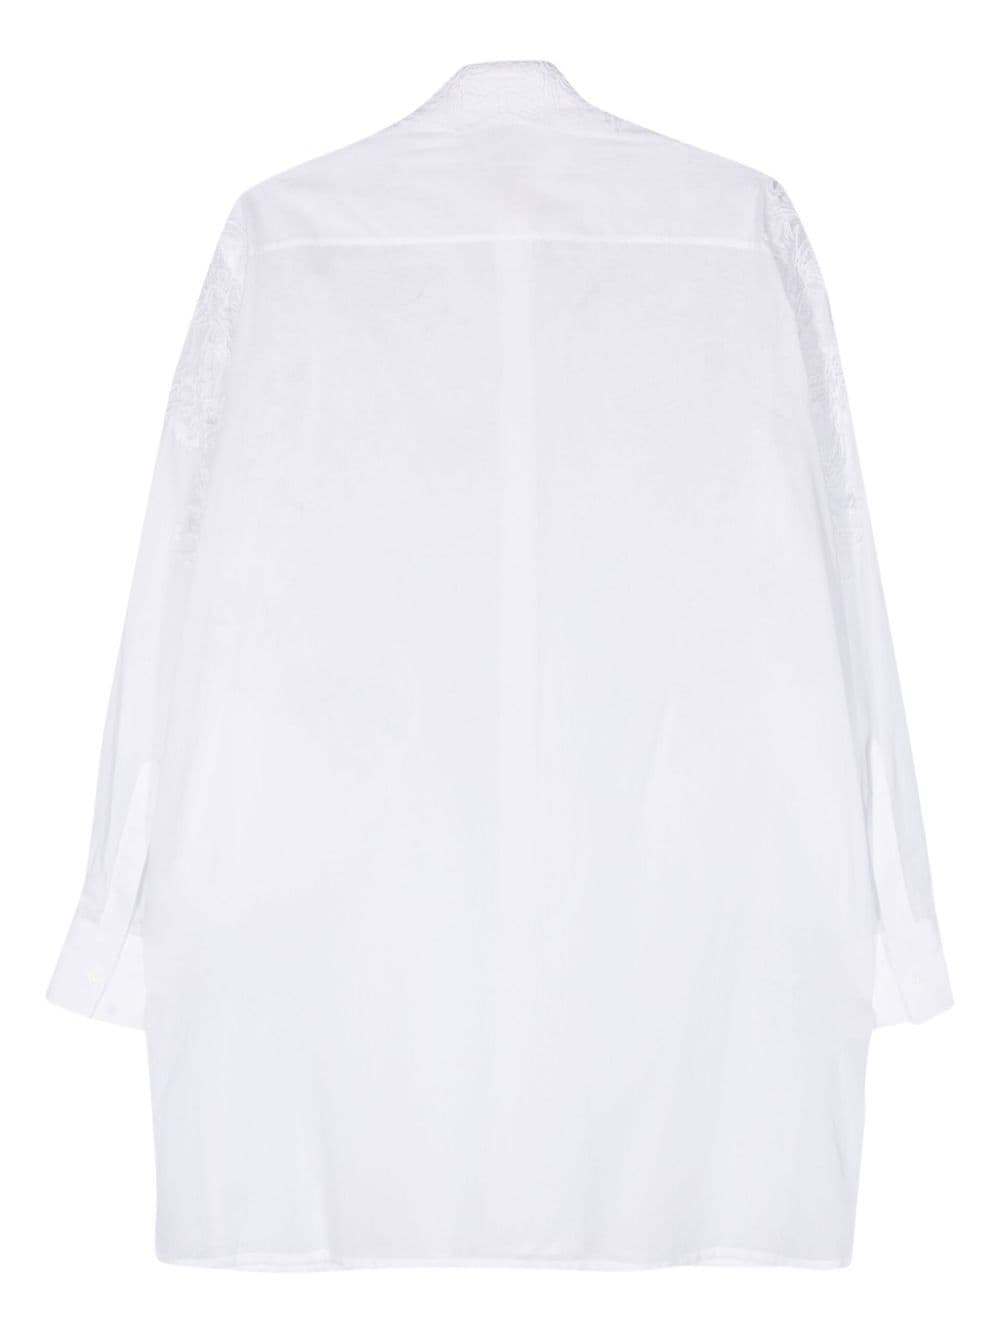 ERMANNO SCERVINO Floral Appliqué Oversized Cotton Shirt for Women